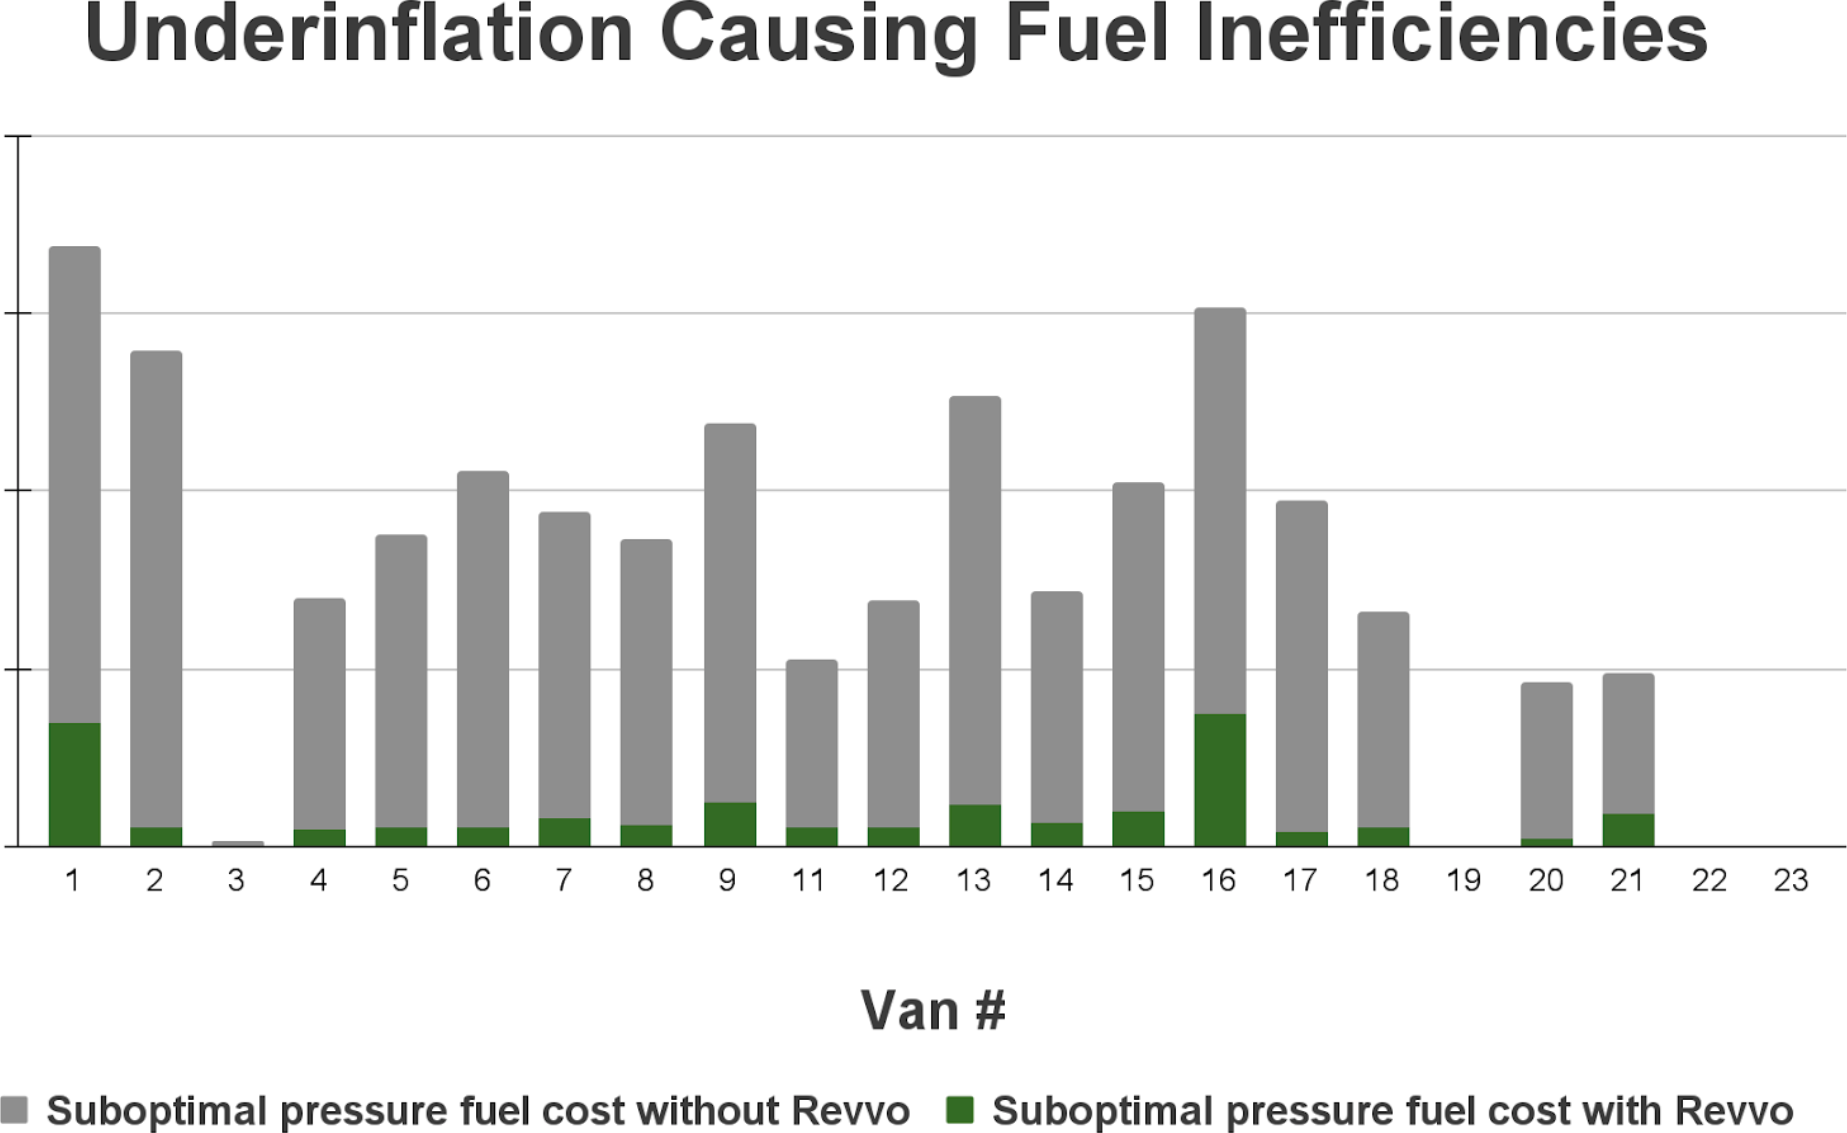 Bar chart showing van fuel inefficiencies due to underinflation.